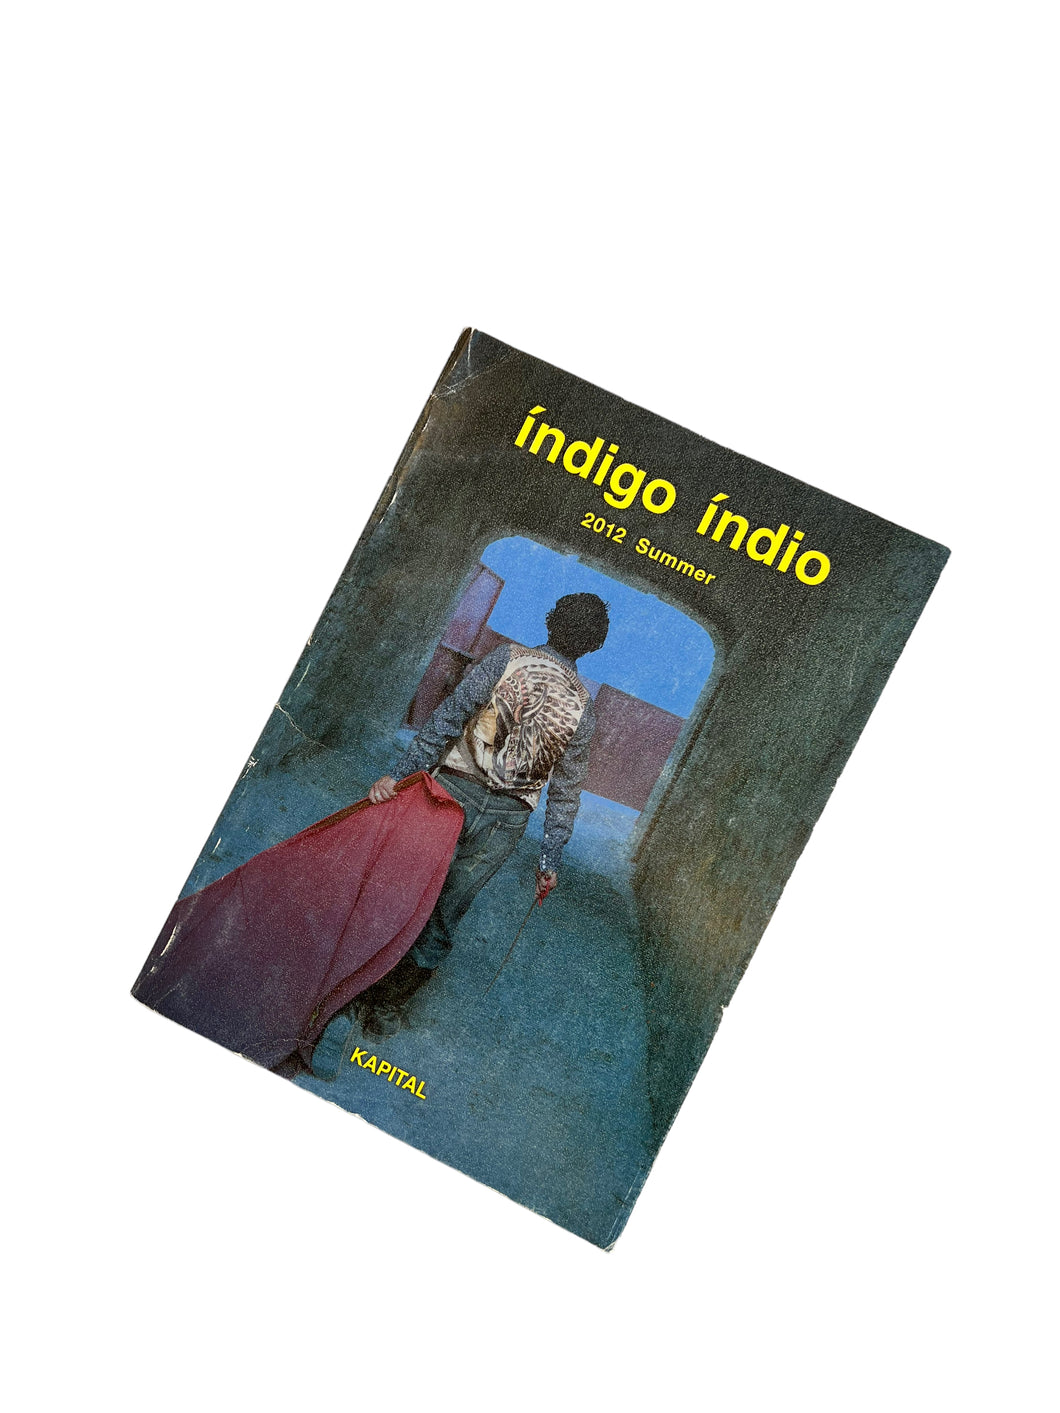 2012 Kapital “indigo indio” Summer Lookbook